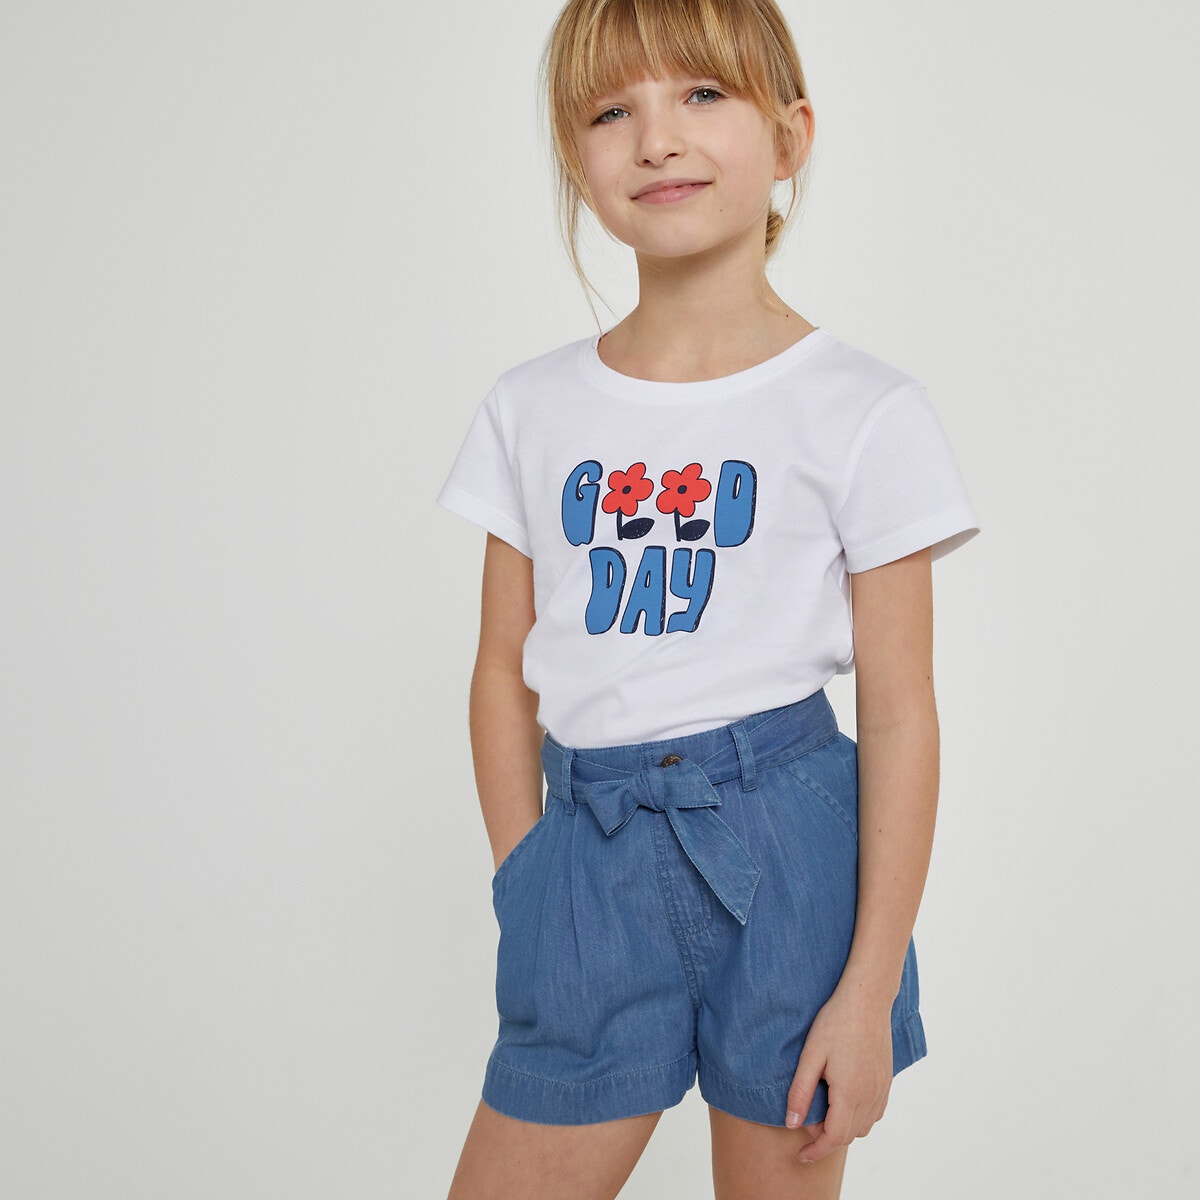 Μόδα > Παιδικά > Κορίτσι > T-shirt, αμάνικες μπλούζες > Κοντομάνικες μπλούζες Κοντομάνικο T-shirt με μήνυμα